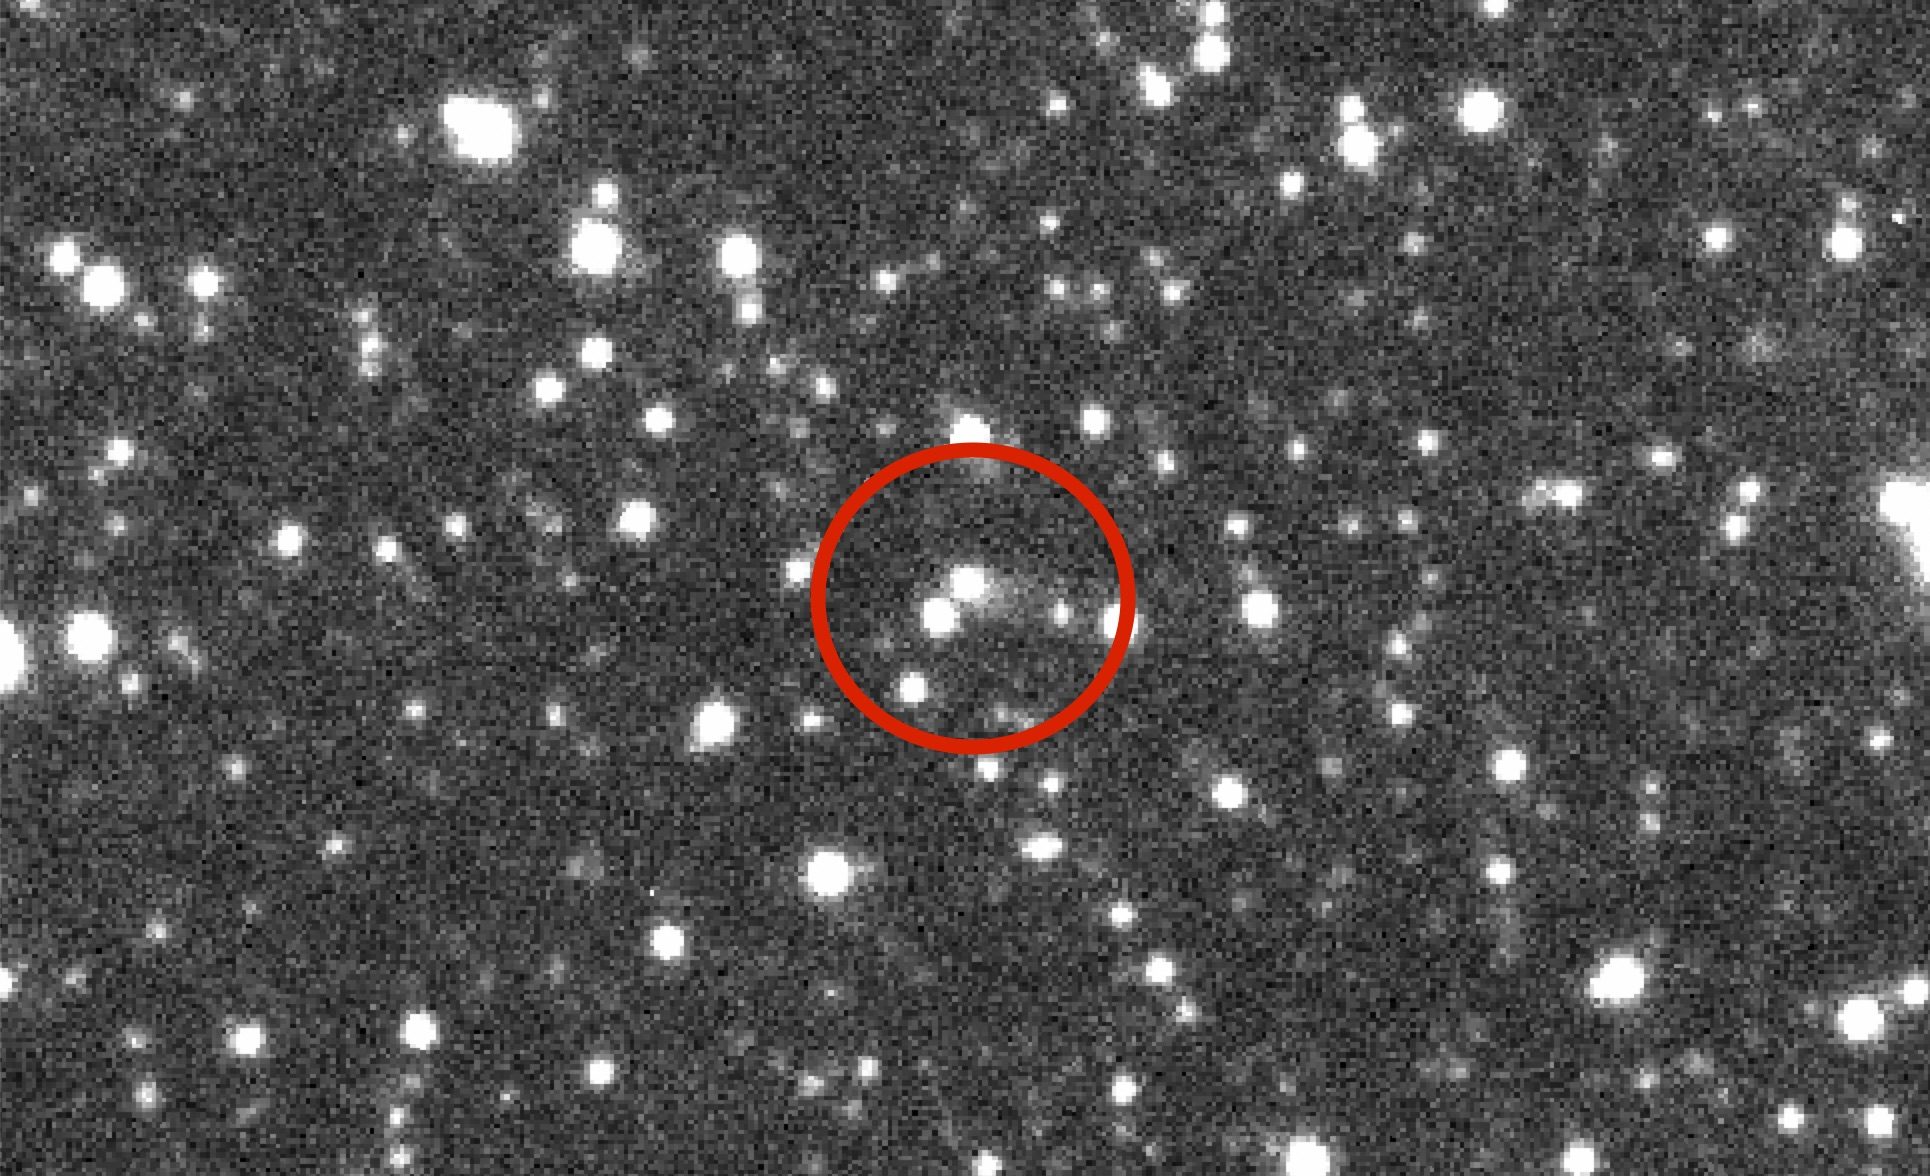 asteroid 2019LD2